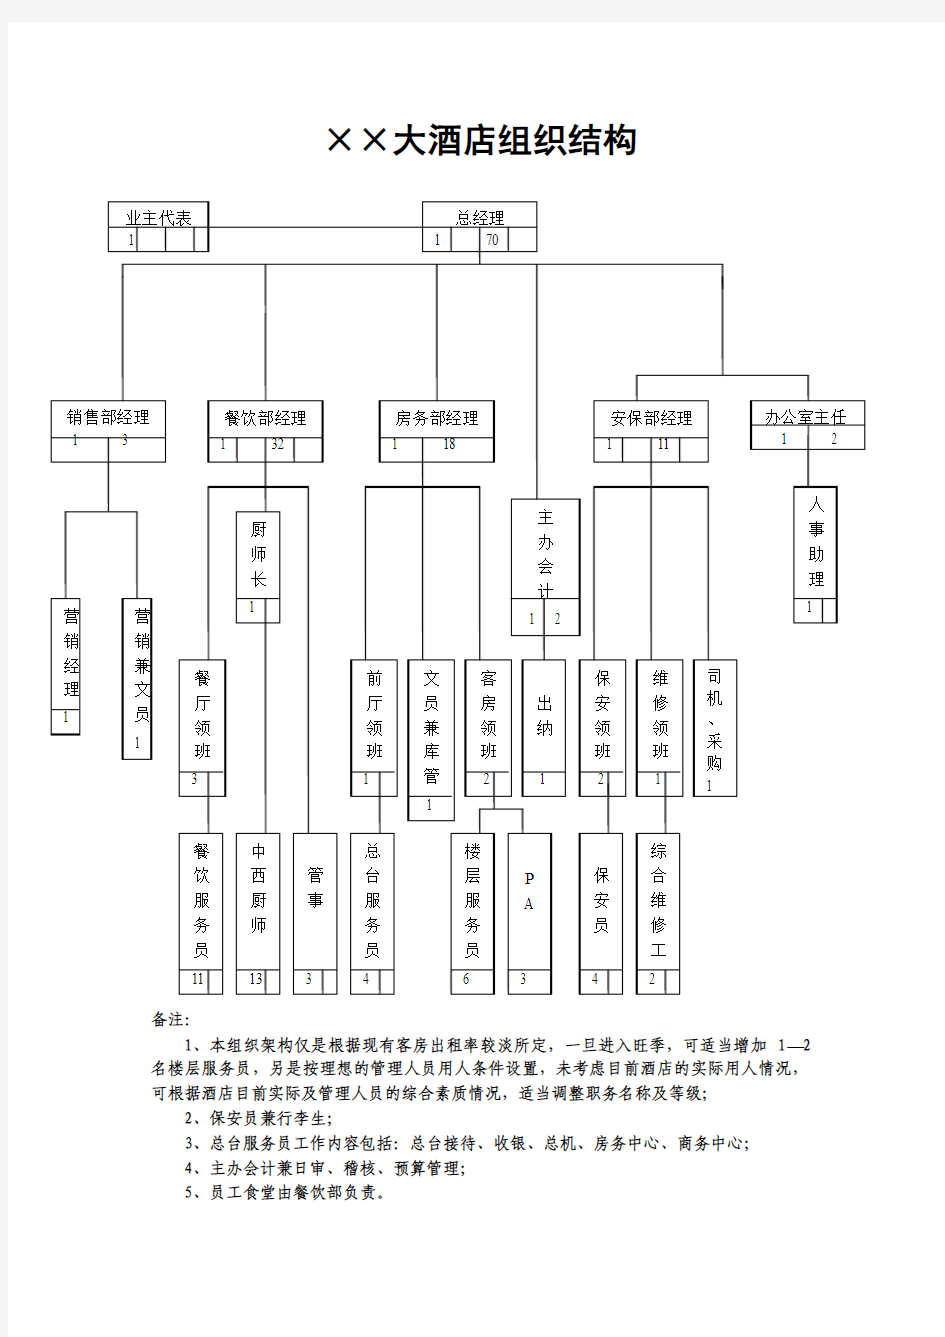 ××大酒店组织结构图